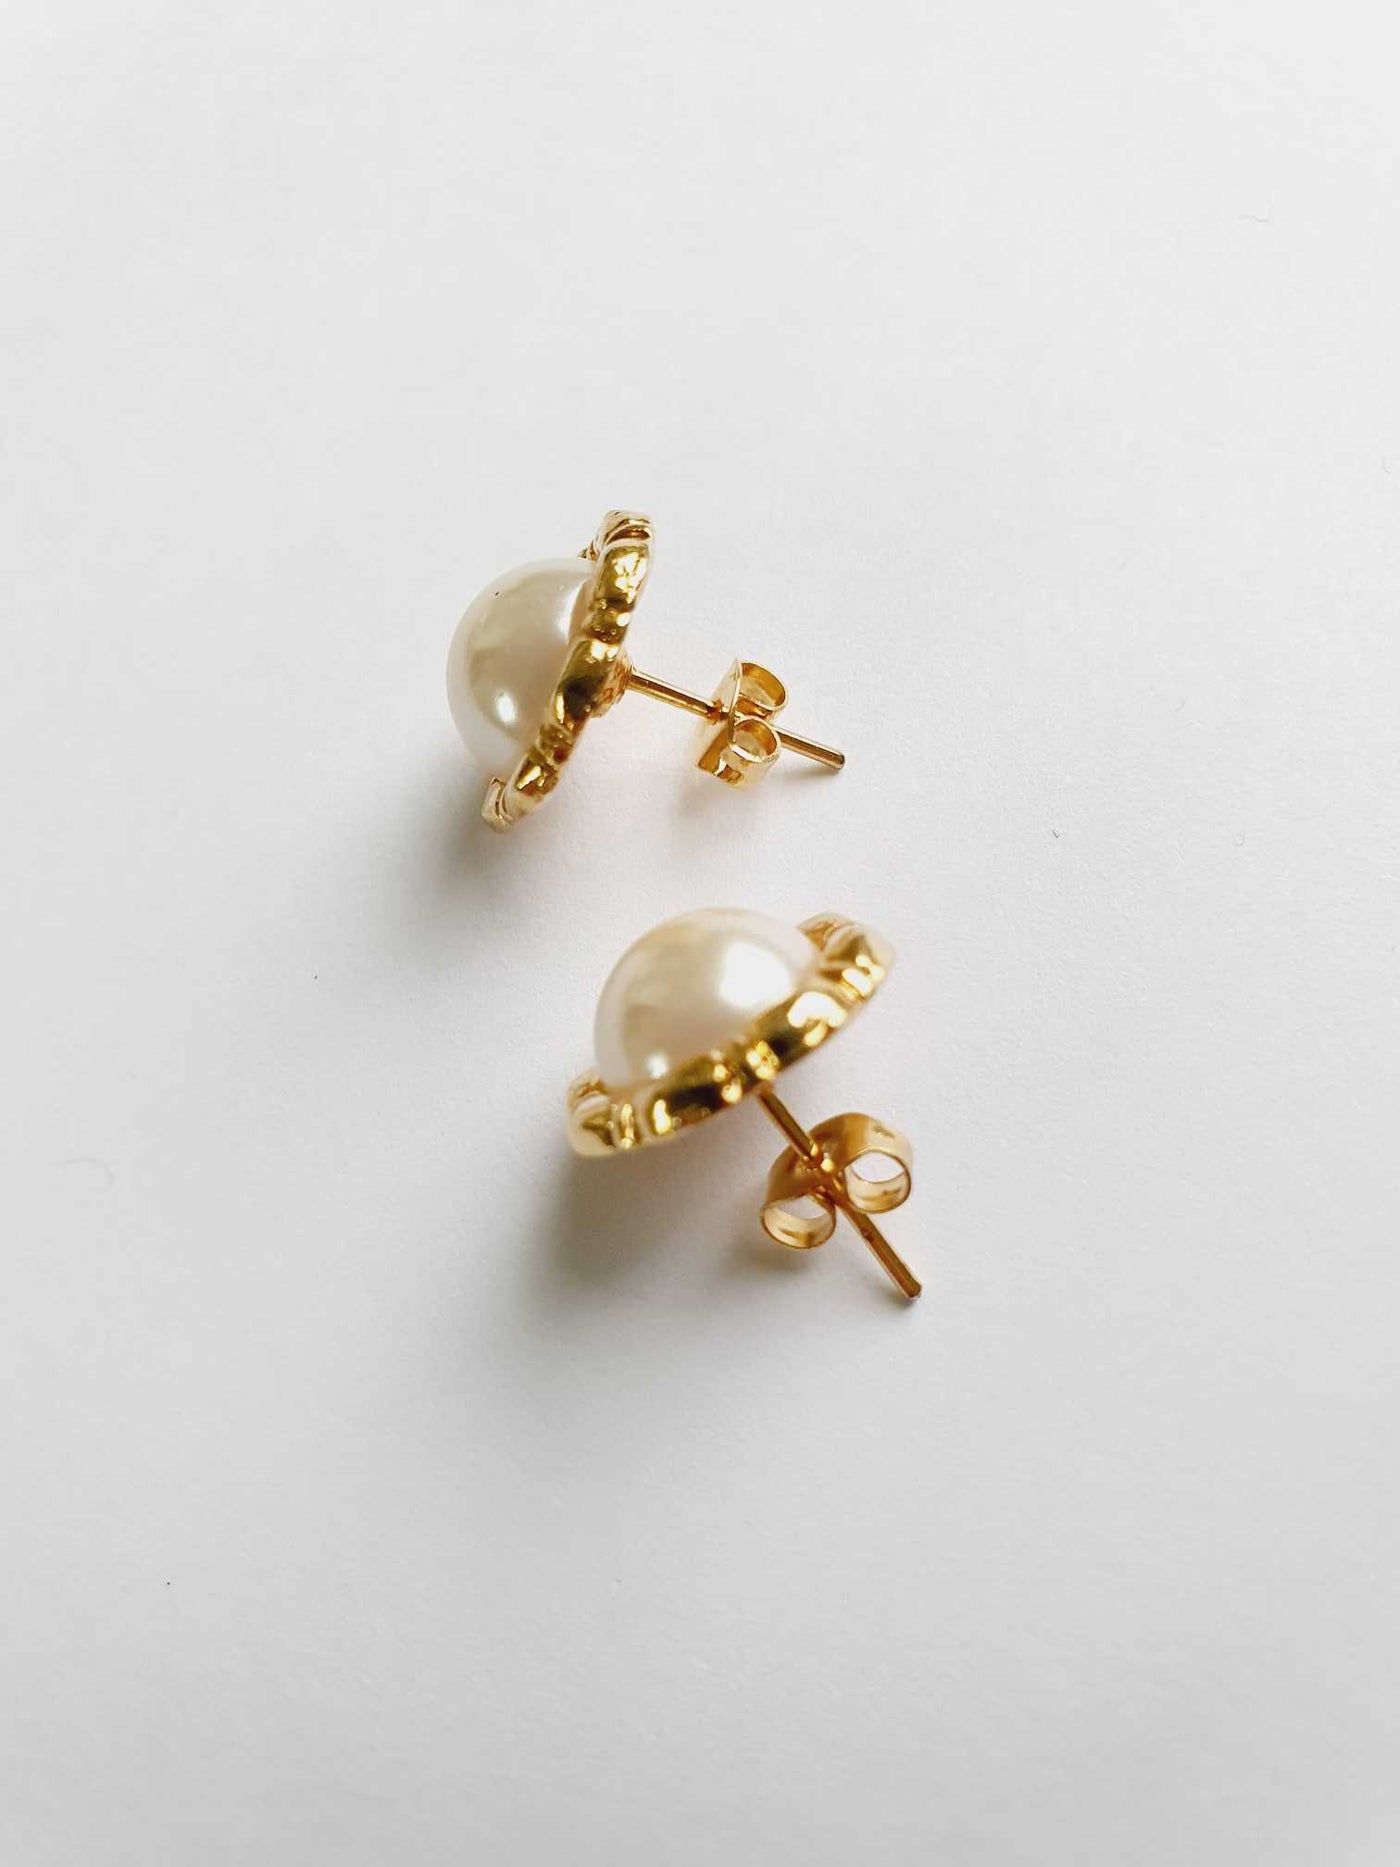 Vintage Gold Toned Pearl Stud Earrings